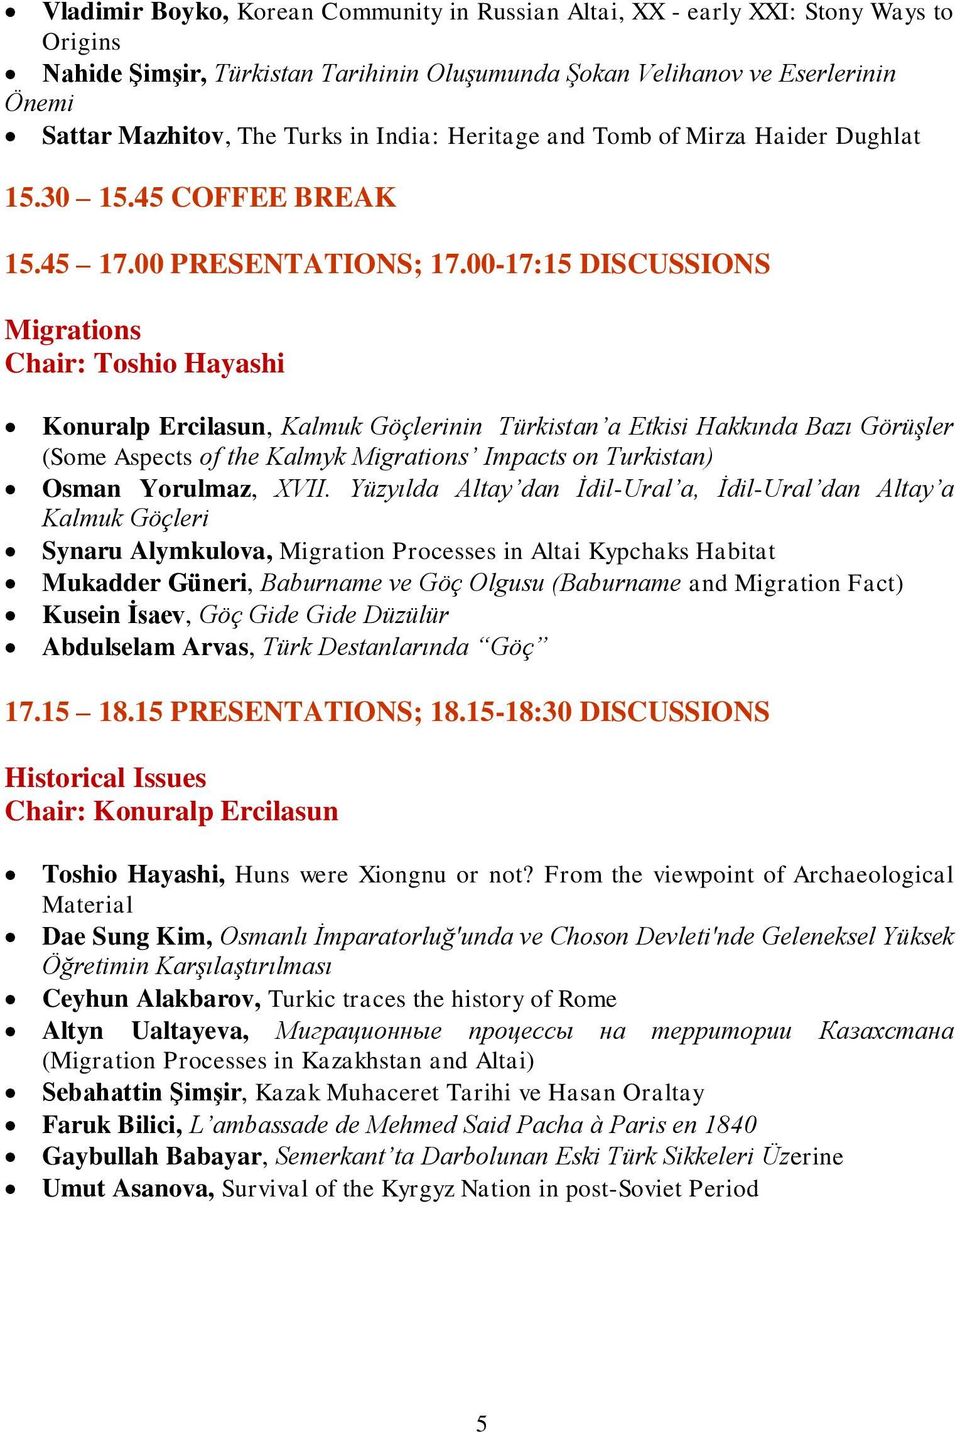 00-17:15 DISCUSSIONS Migrations Chair: Toshio Hayashi Konuralp Ercilasun, Kalmuk Göçlerinin Türkistan a Etkisi Hakkında Bazı Görüşler (Some Aspects of the Kalmyk Migrations Impacts on Turkistan)